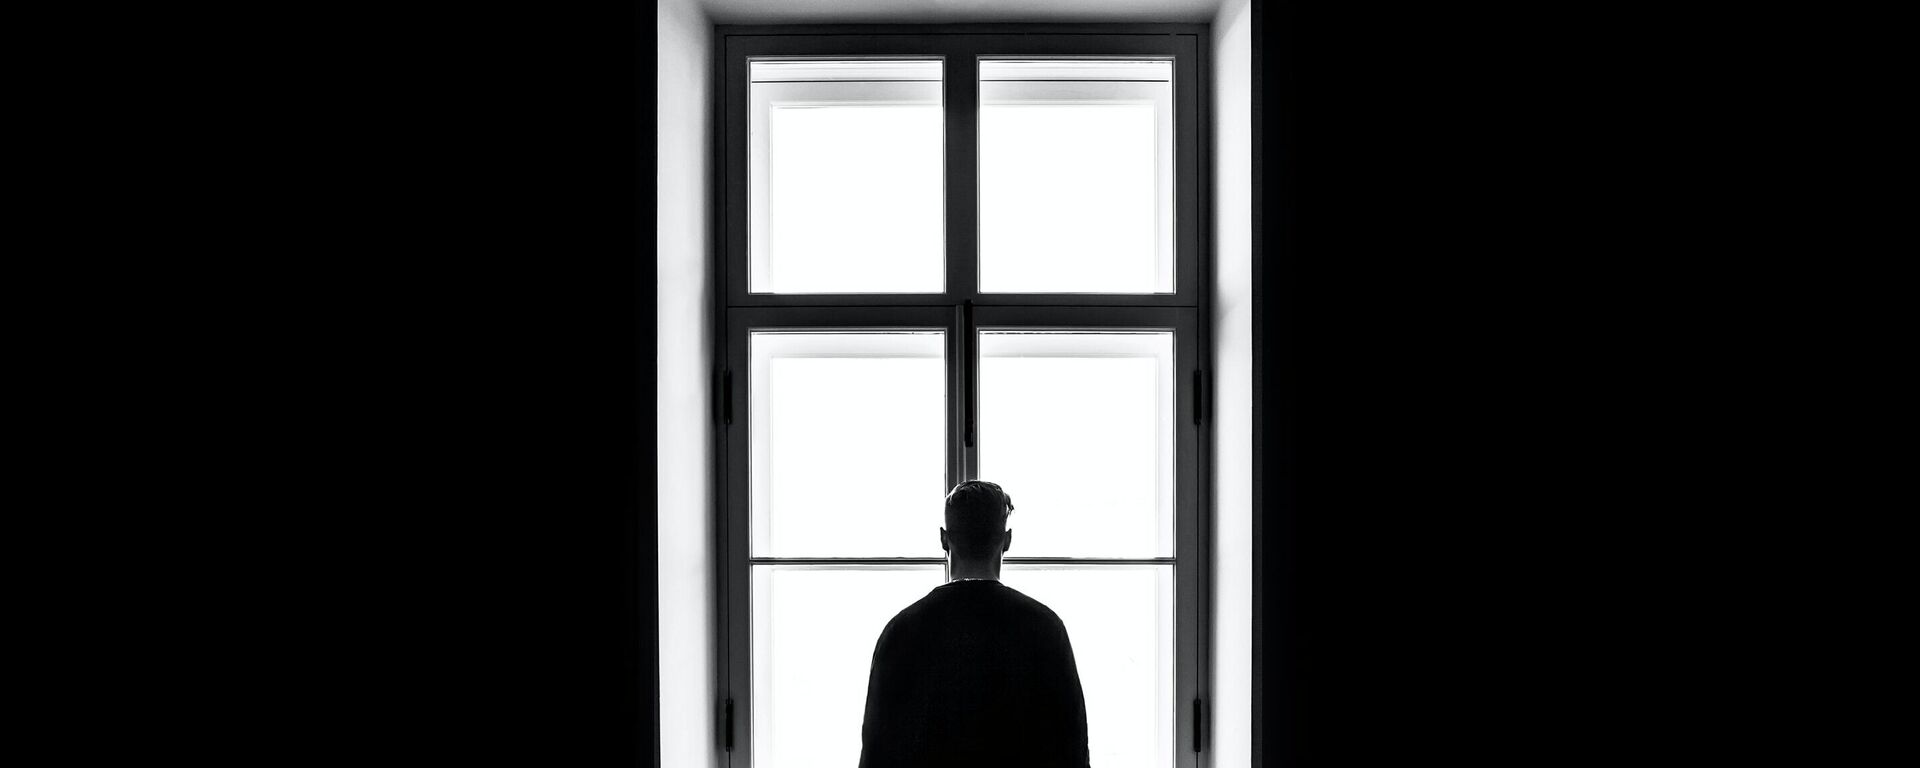 Una persona delante de una ventana en la oscuridad - Sputnik Mundo, 1920, 02.06.2022